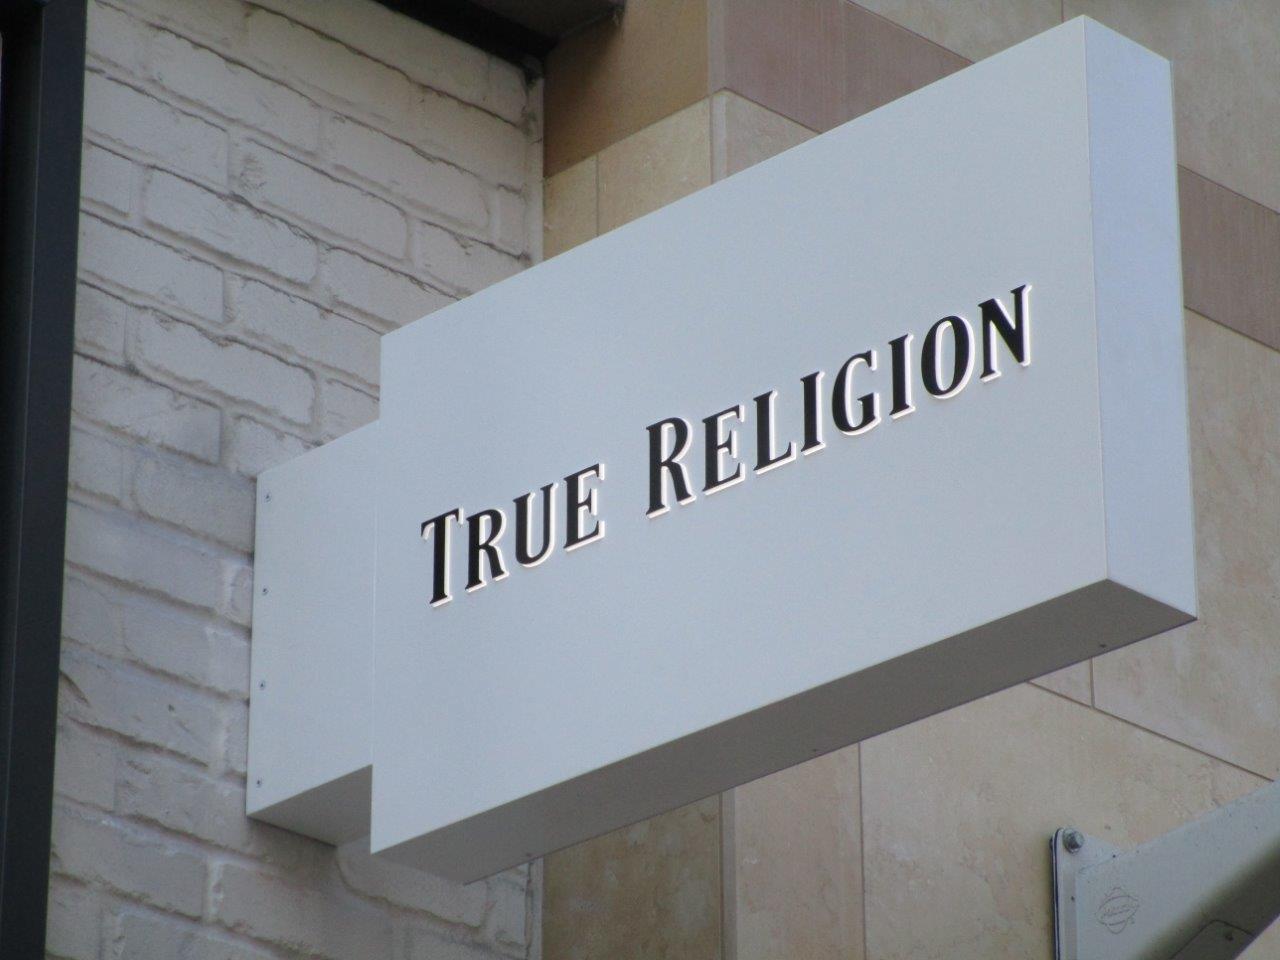 True Religion Blade Sign